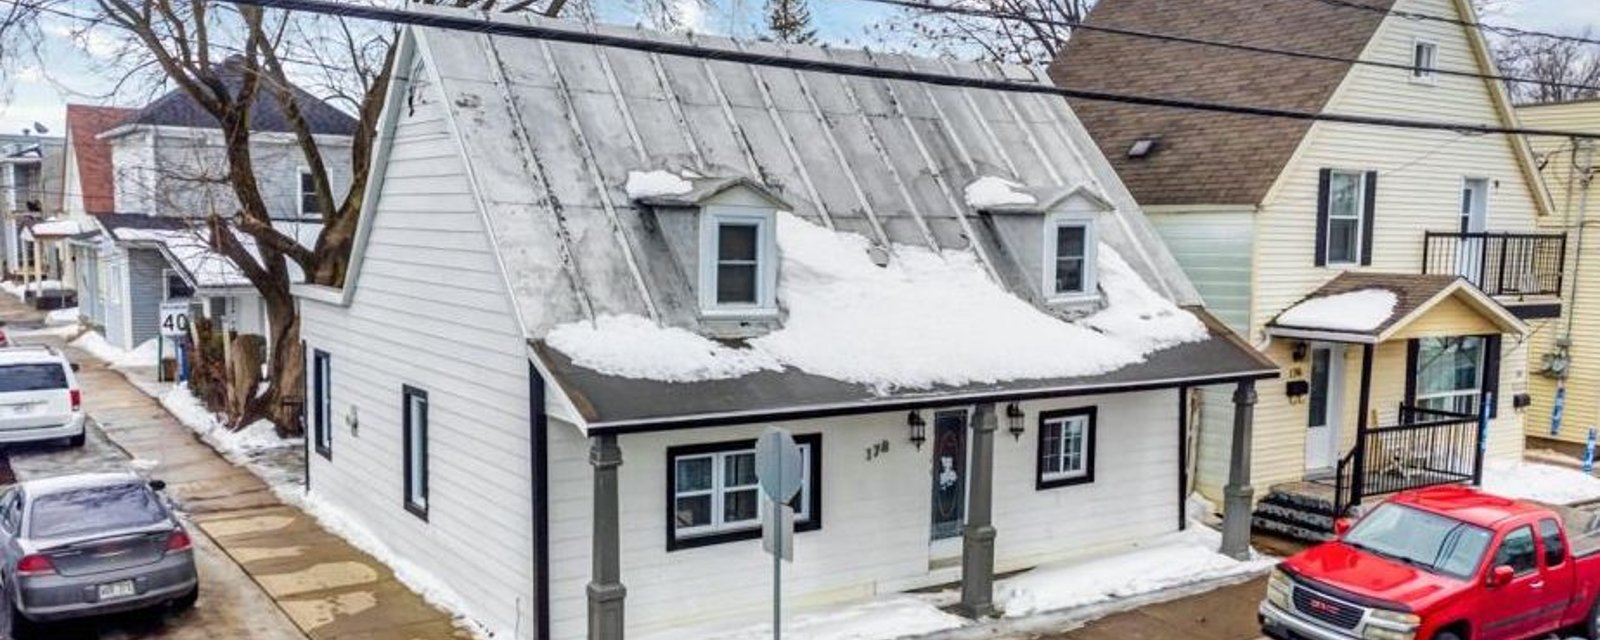 Charmant cottage à 220 000$ dont l'intérieur mi-ancien mi-moderne est digne de Pinterest